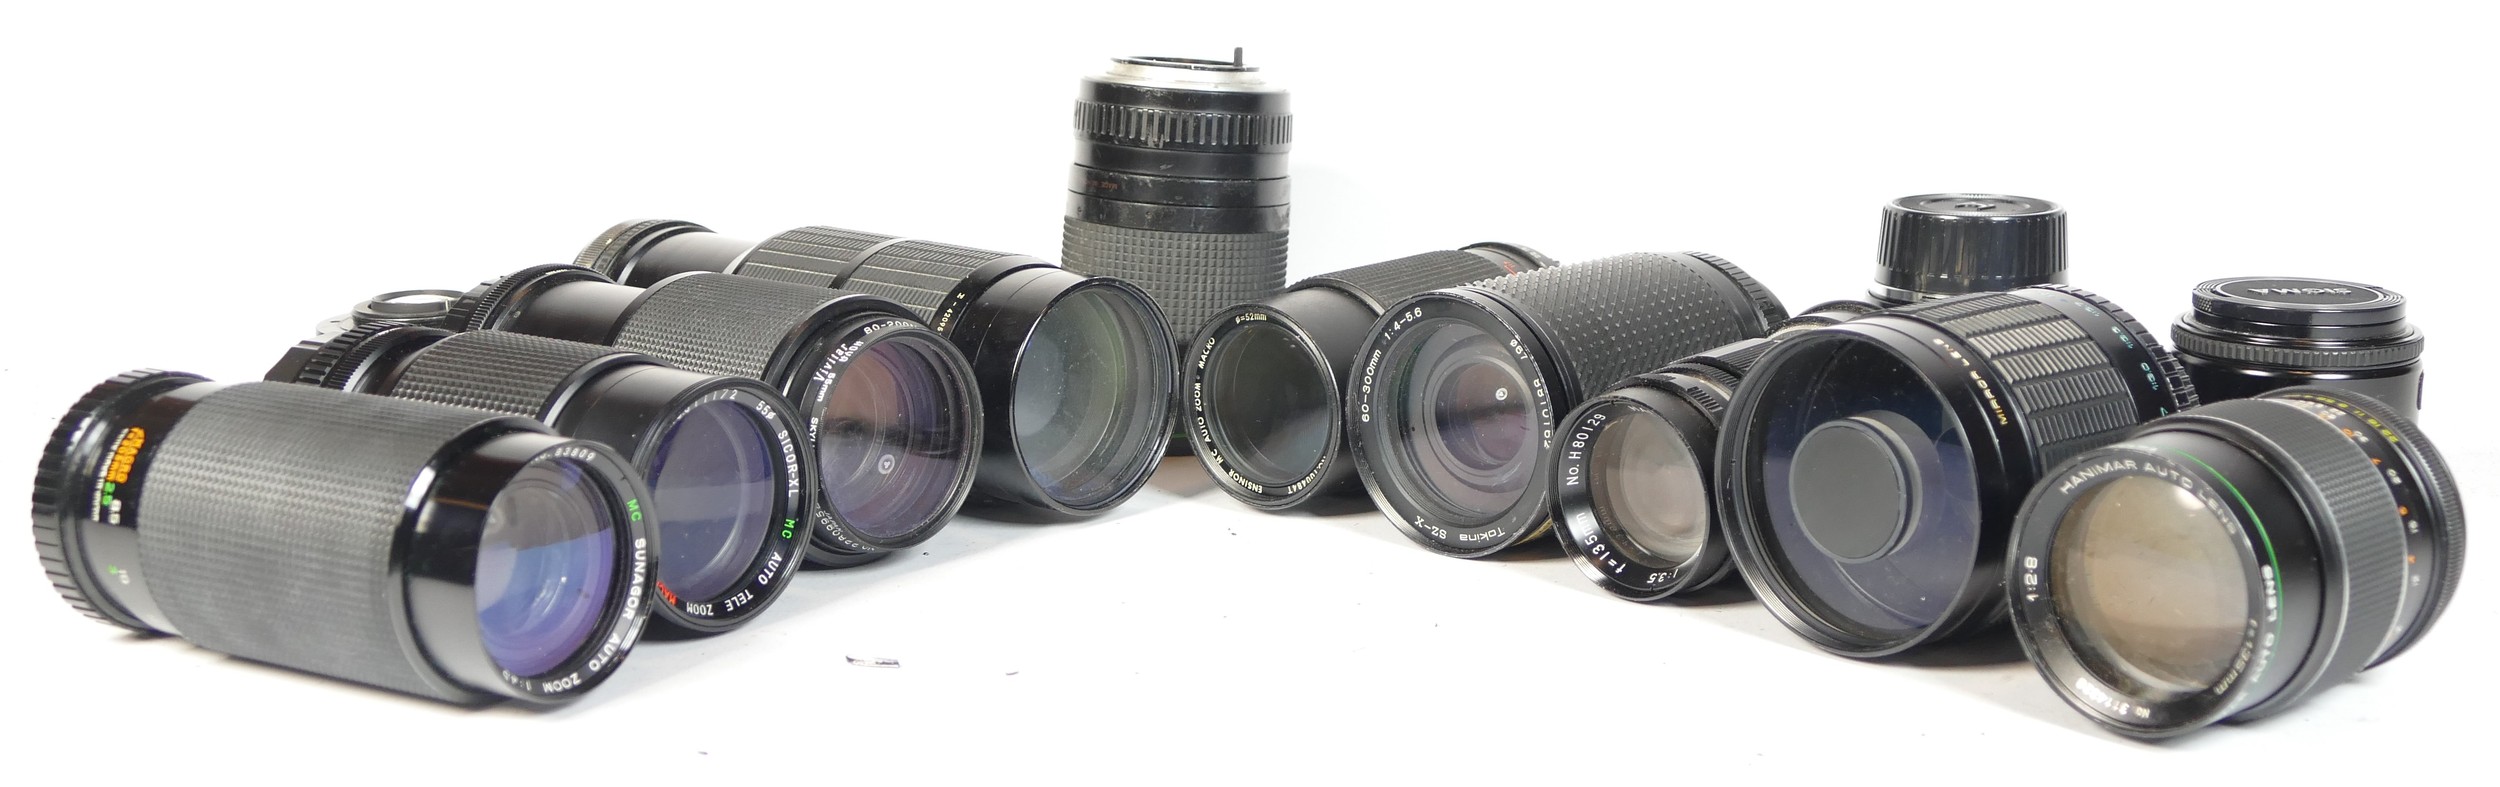 Four SLR vintage film cameras to include a Minolta 7000, a Praktica LTL, a Praktica TLS and and - Image 3 of 3